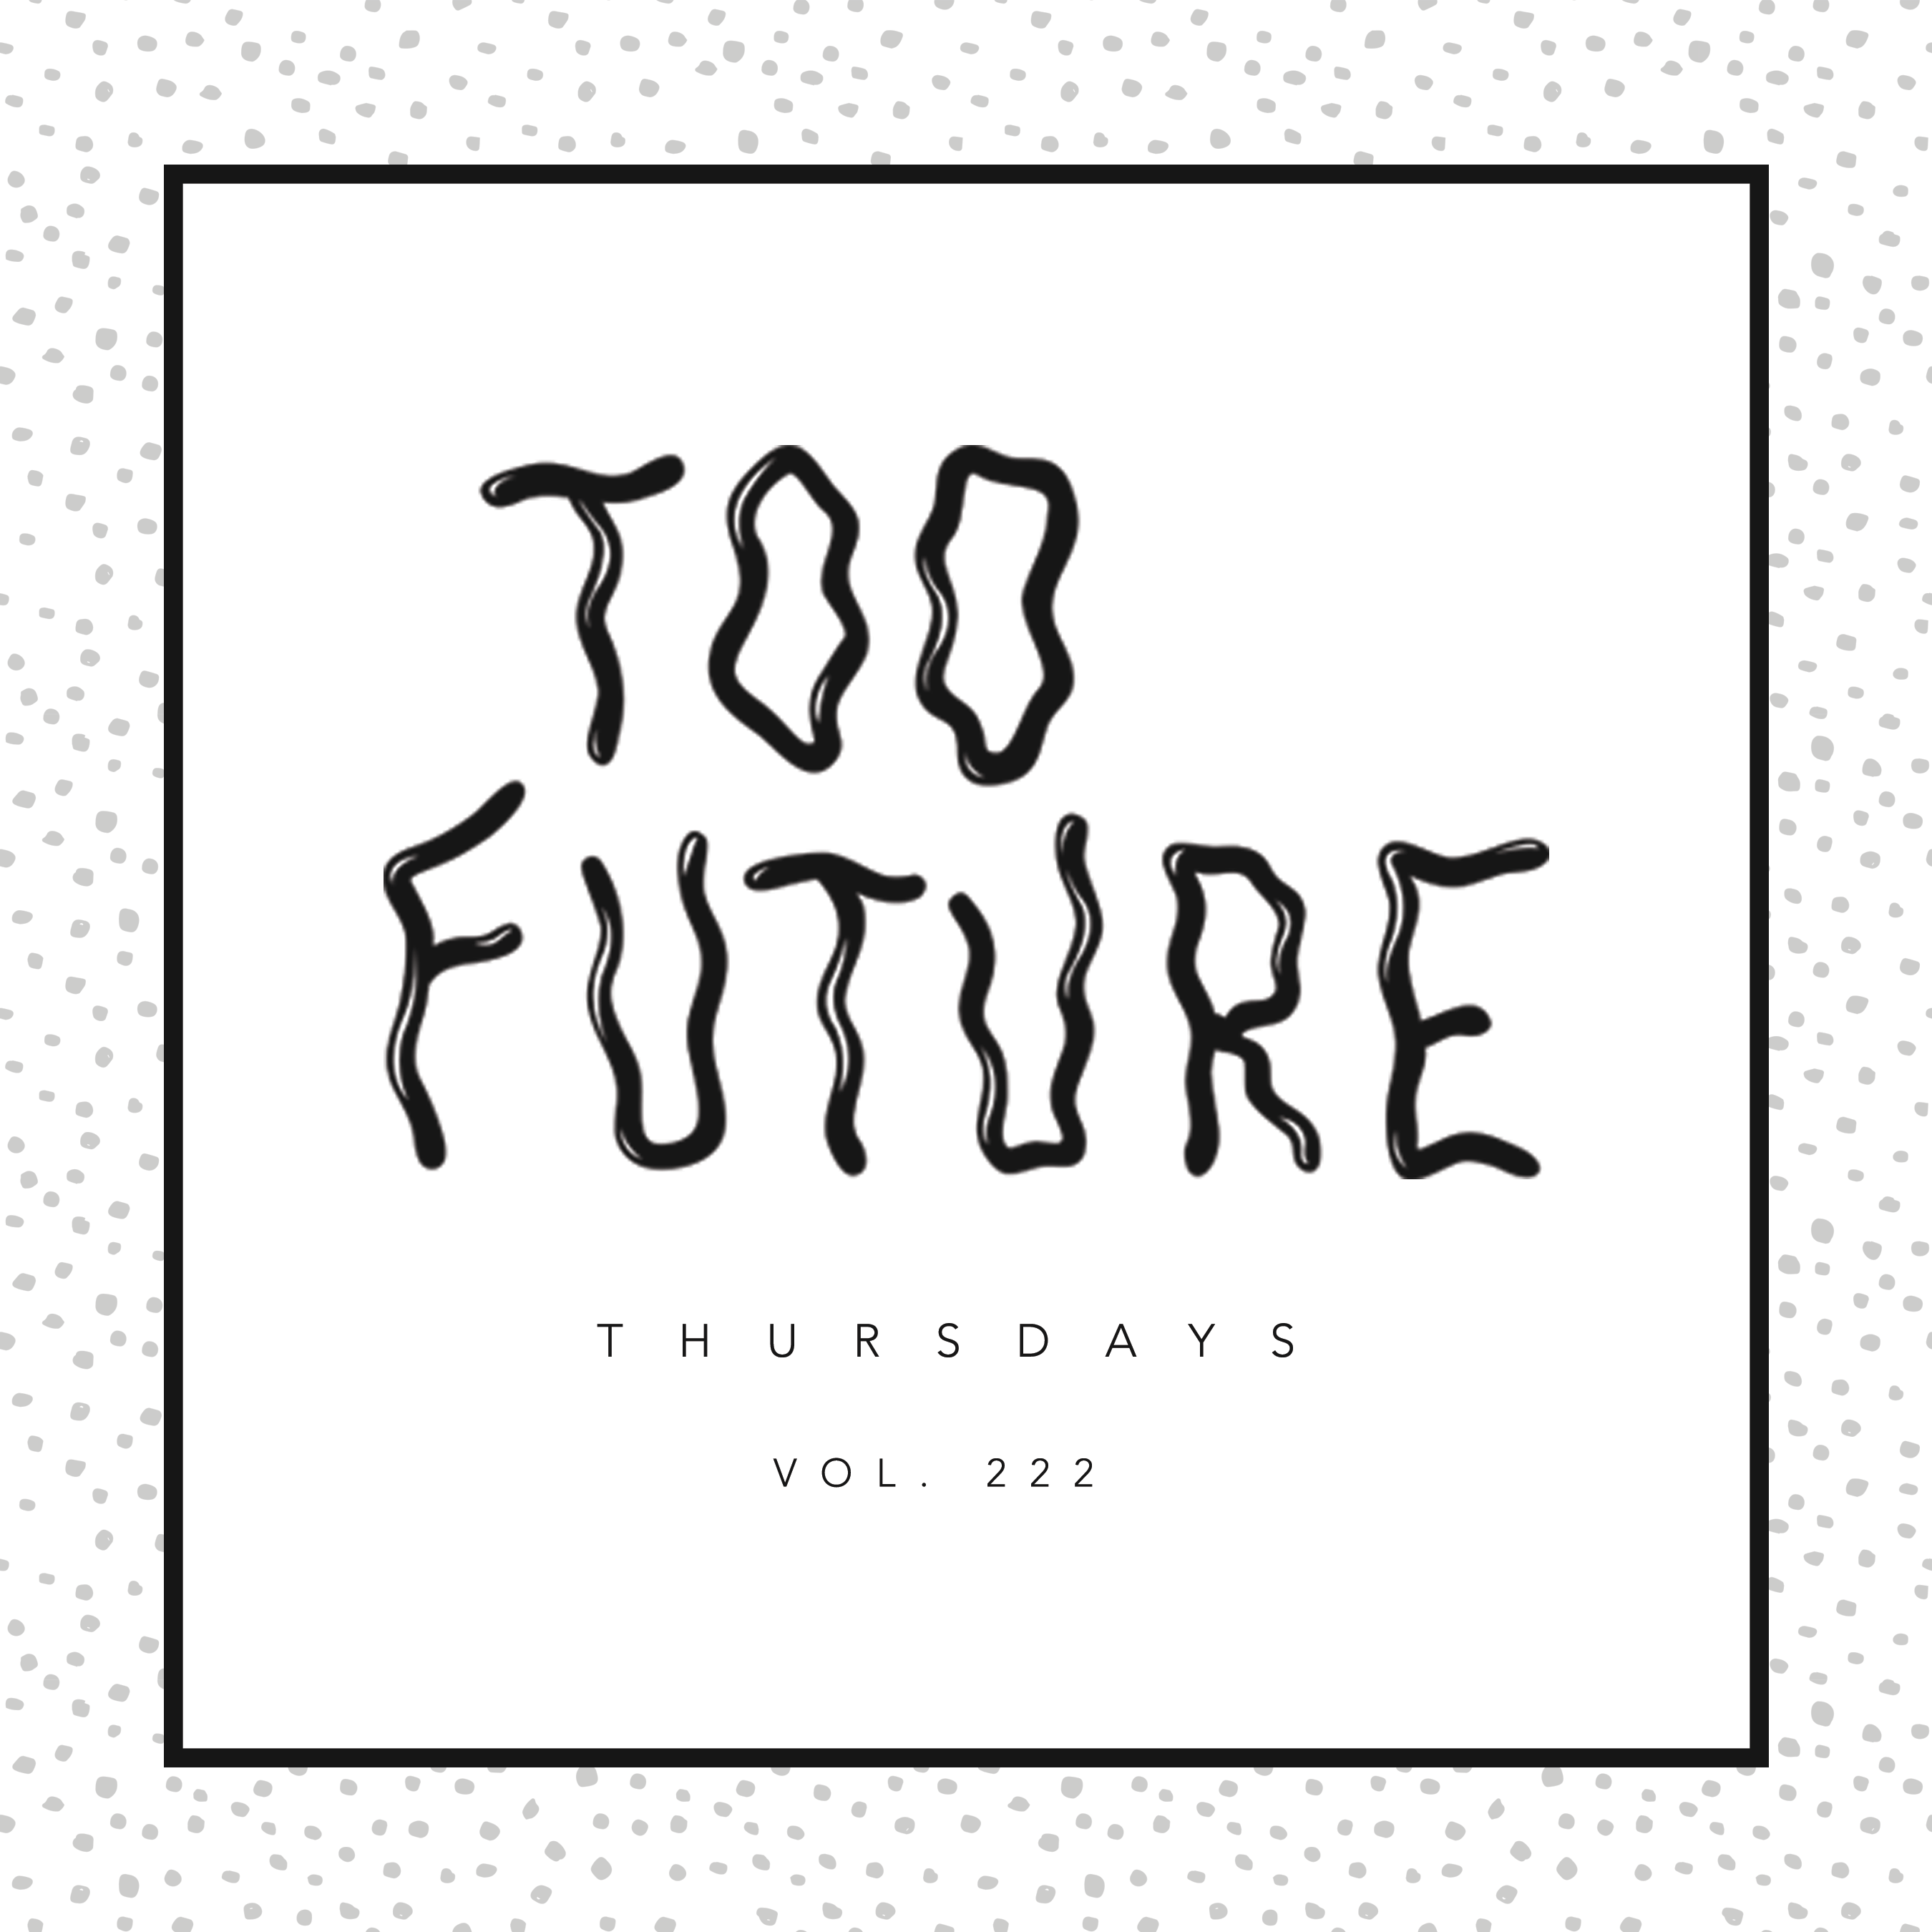 too-future-thursdays-vol-222